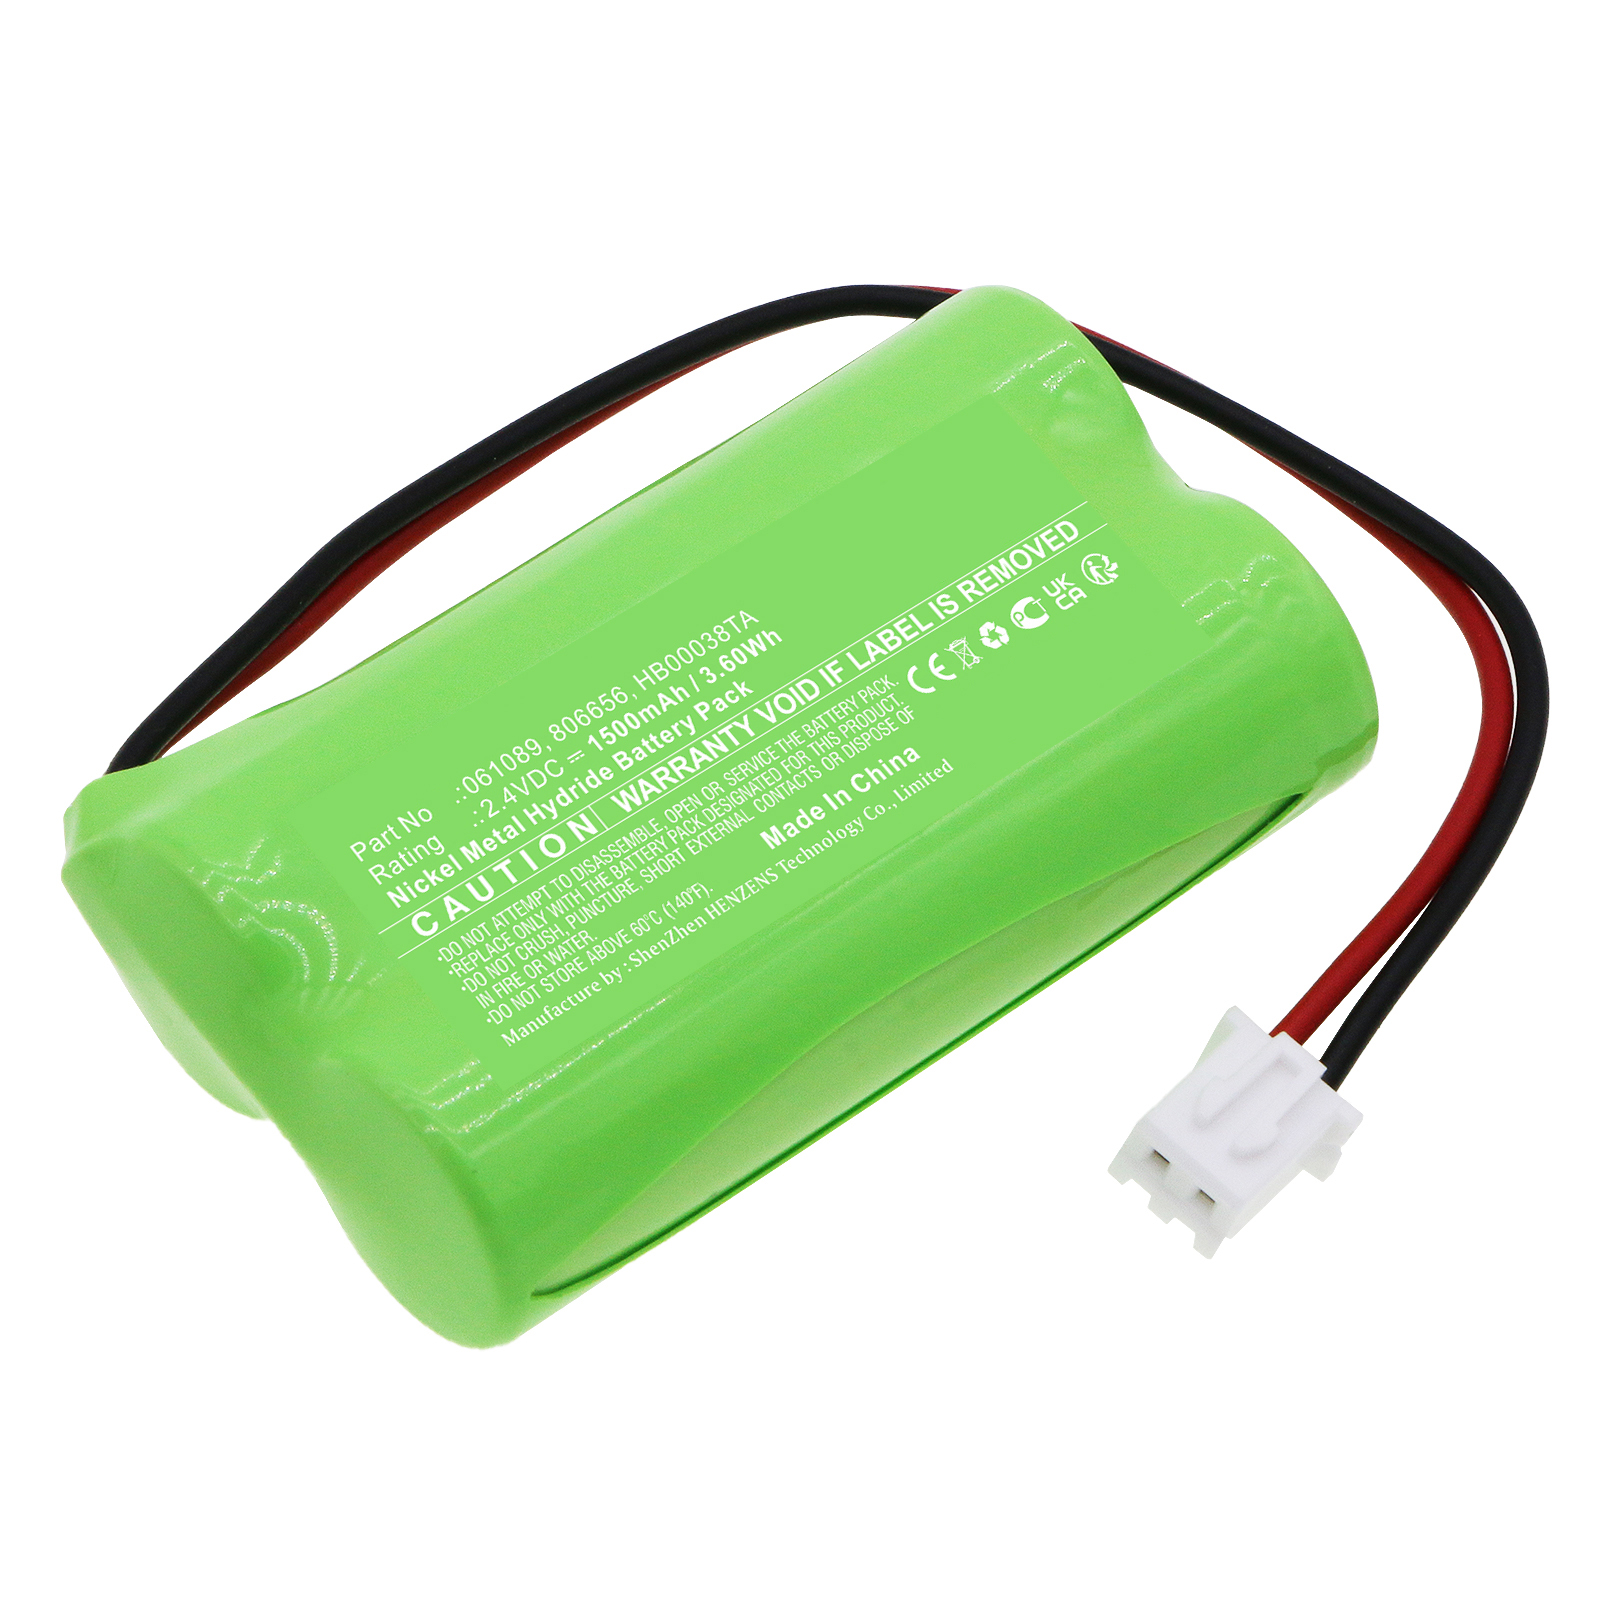 Synergy Digital Emergency Lighting Battery, Compatible with Legrand 806656 Emergency Lighting Battery (Ni-MH, 2.4V, 1500mAh)